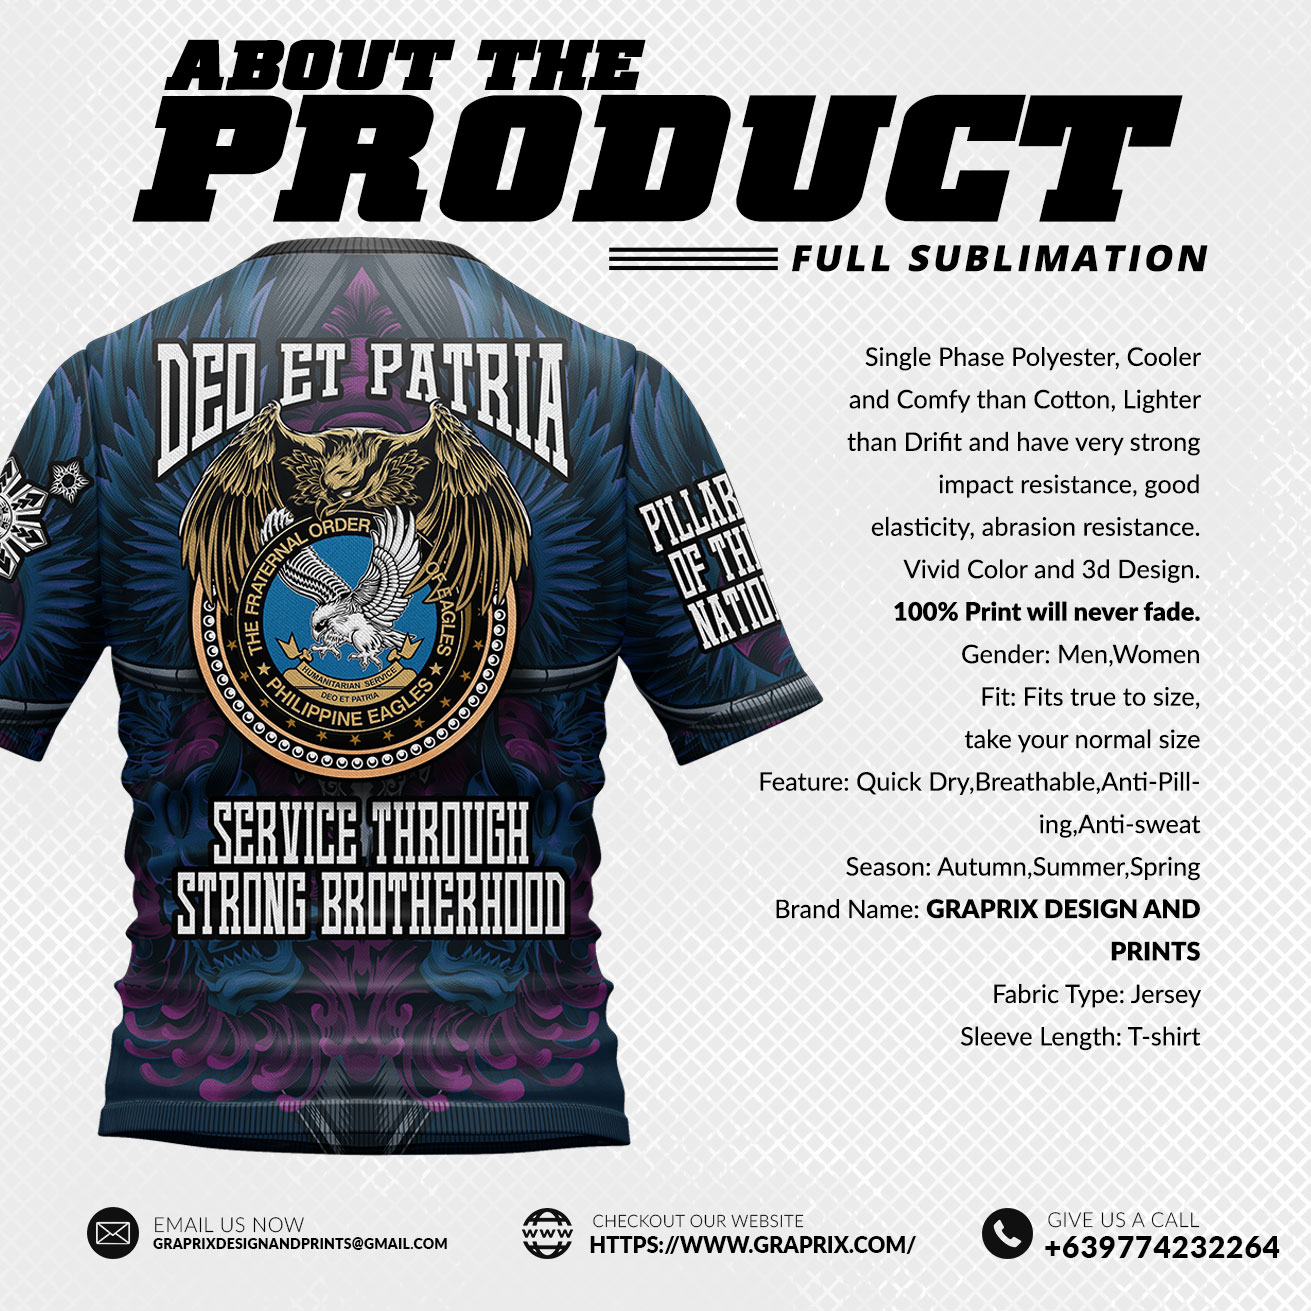 Philippines Custom Hawaiian Shirt The Fraternal Order of Eagles Hawaiian  Shirt - Listentee